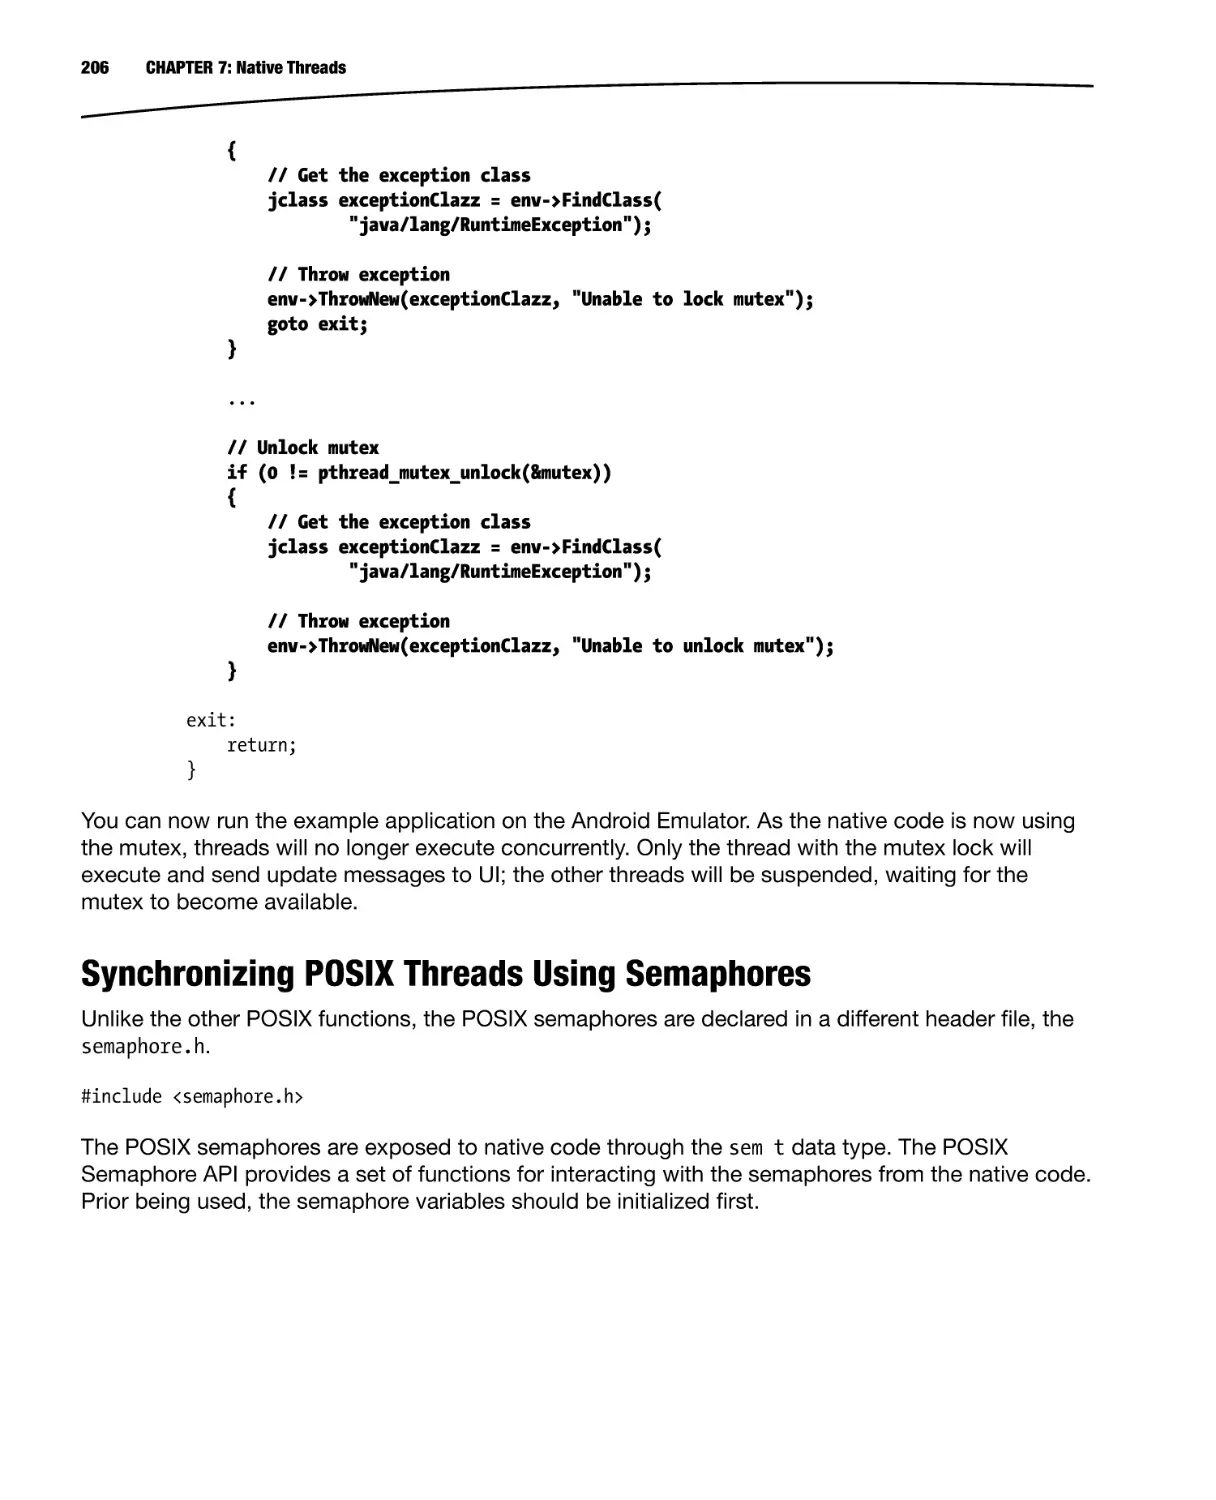 Synchronizing POSIX Threads Using Semaphores